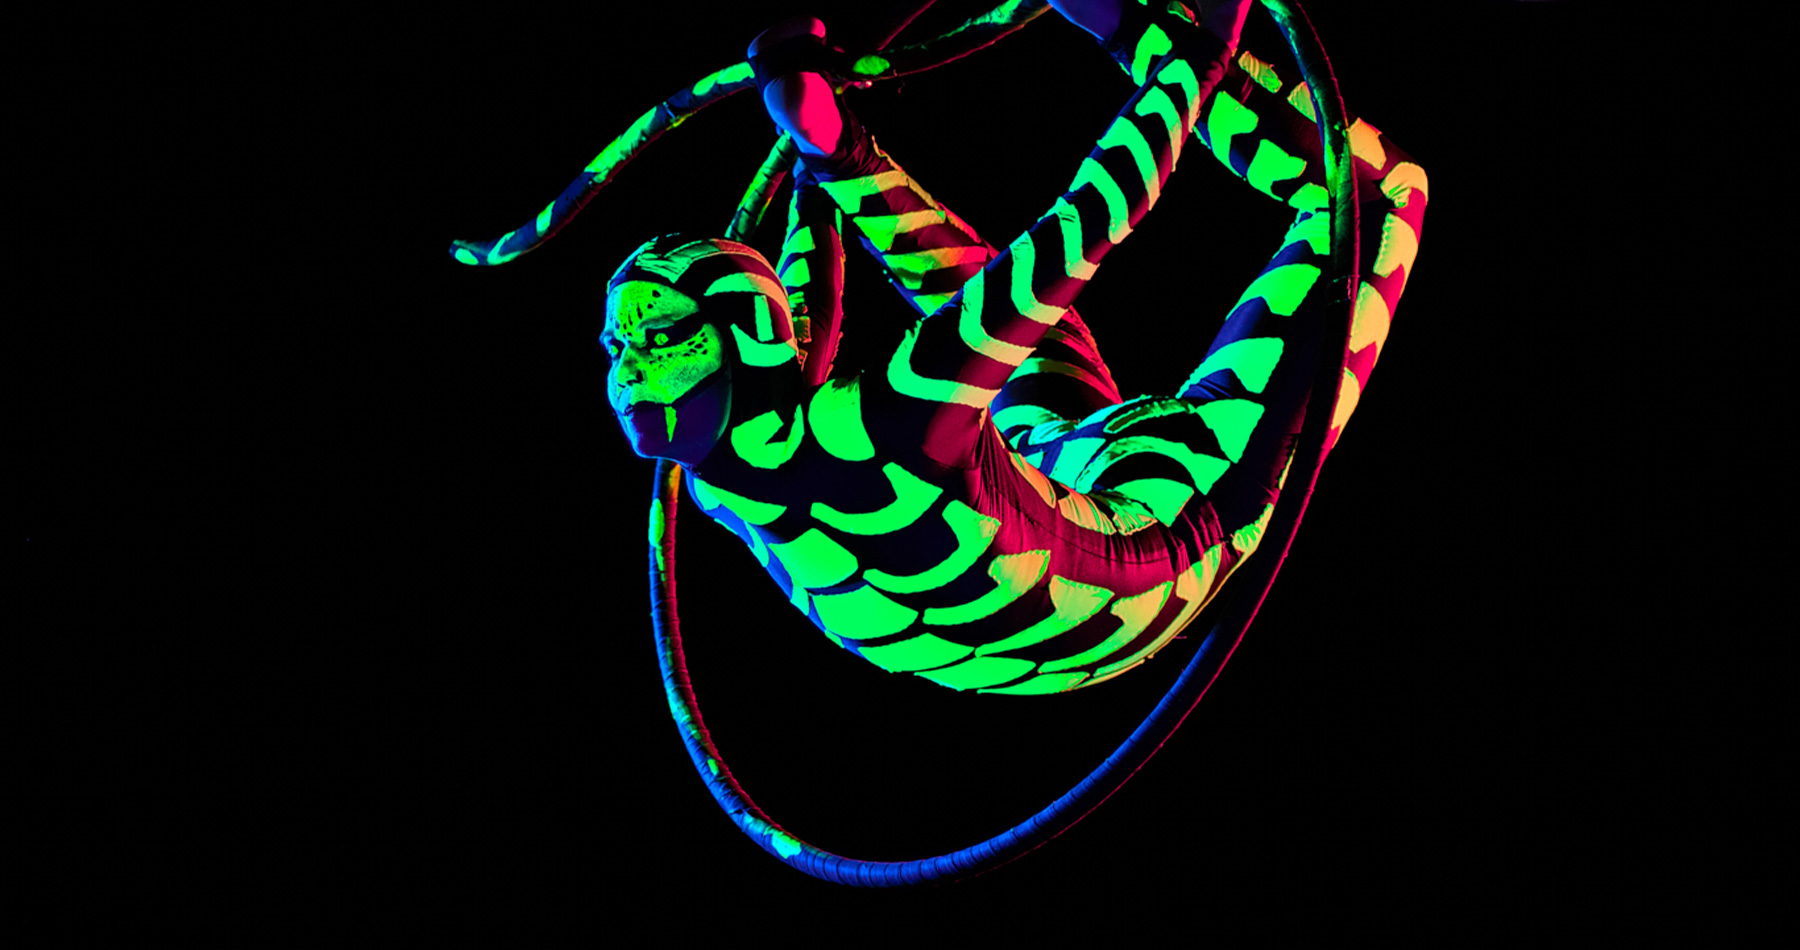 neon aerial hoop act kaaa